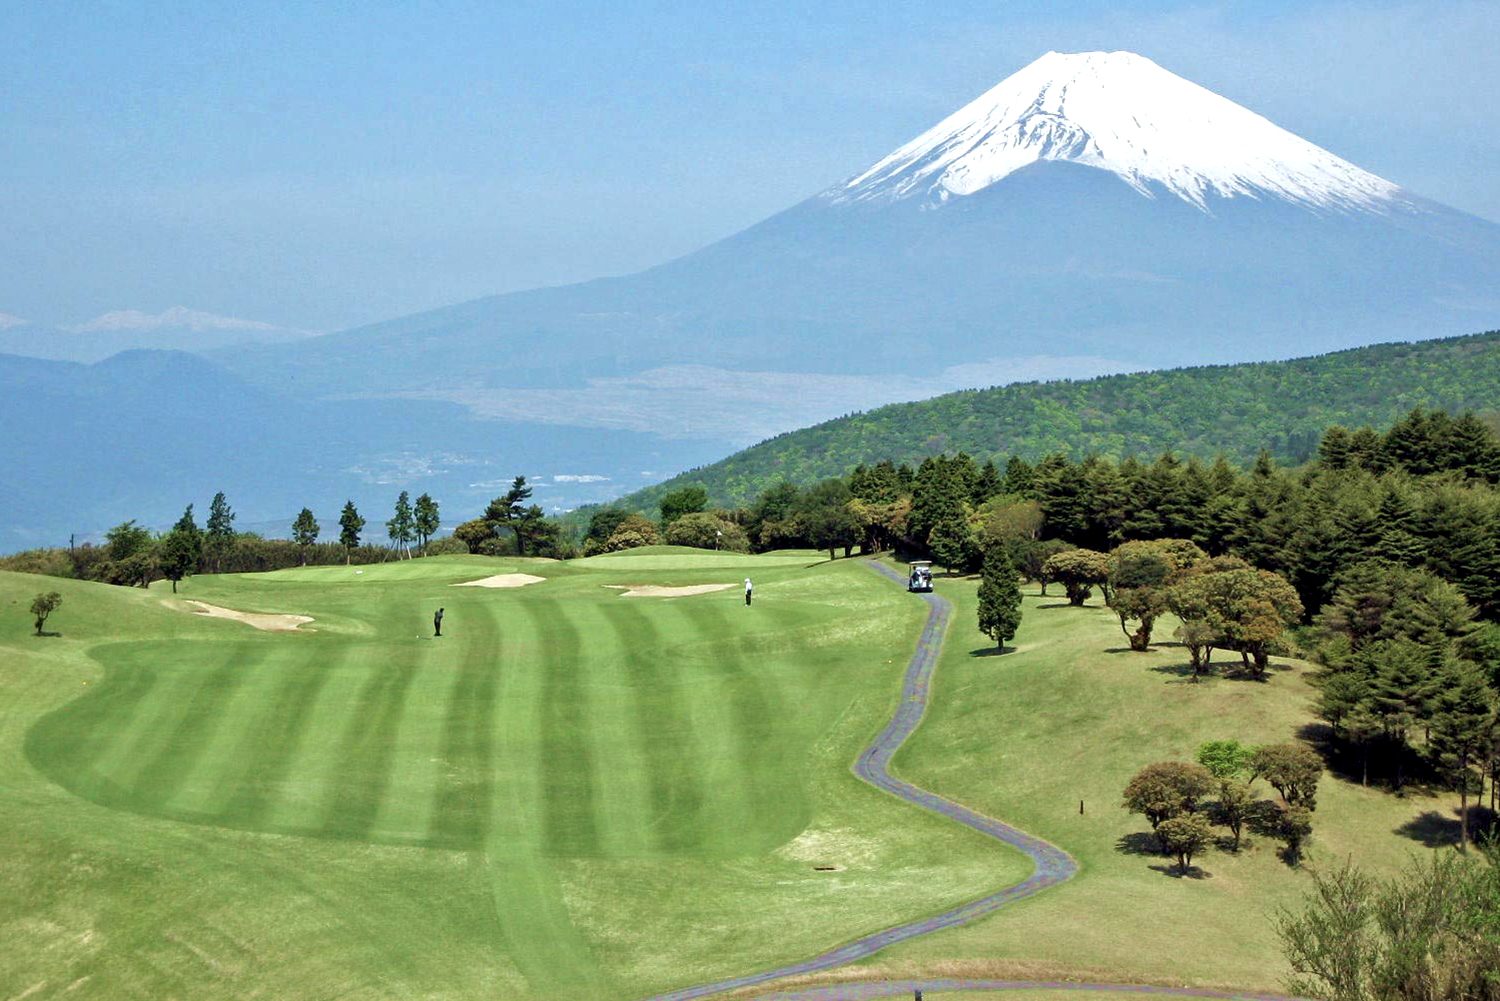 Golf in Japan